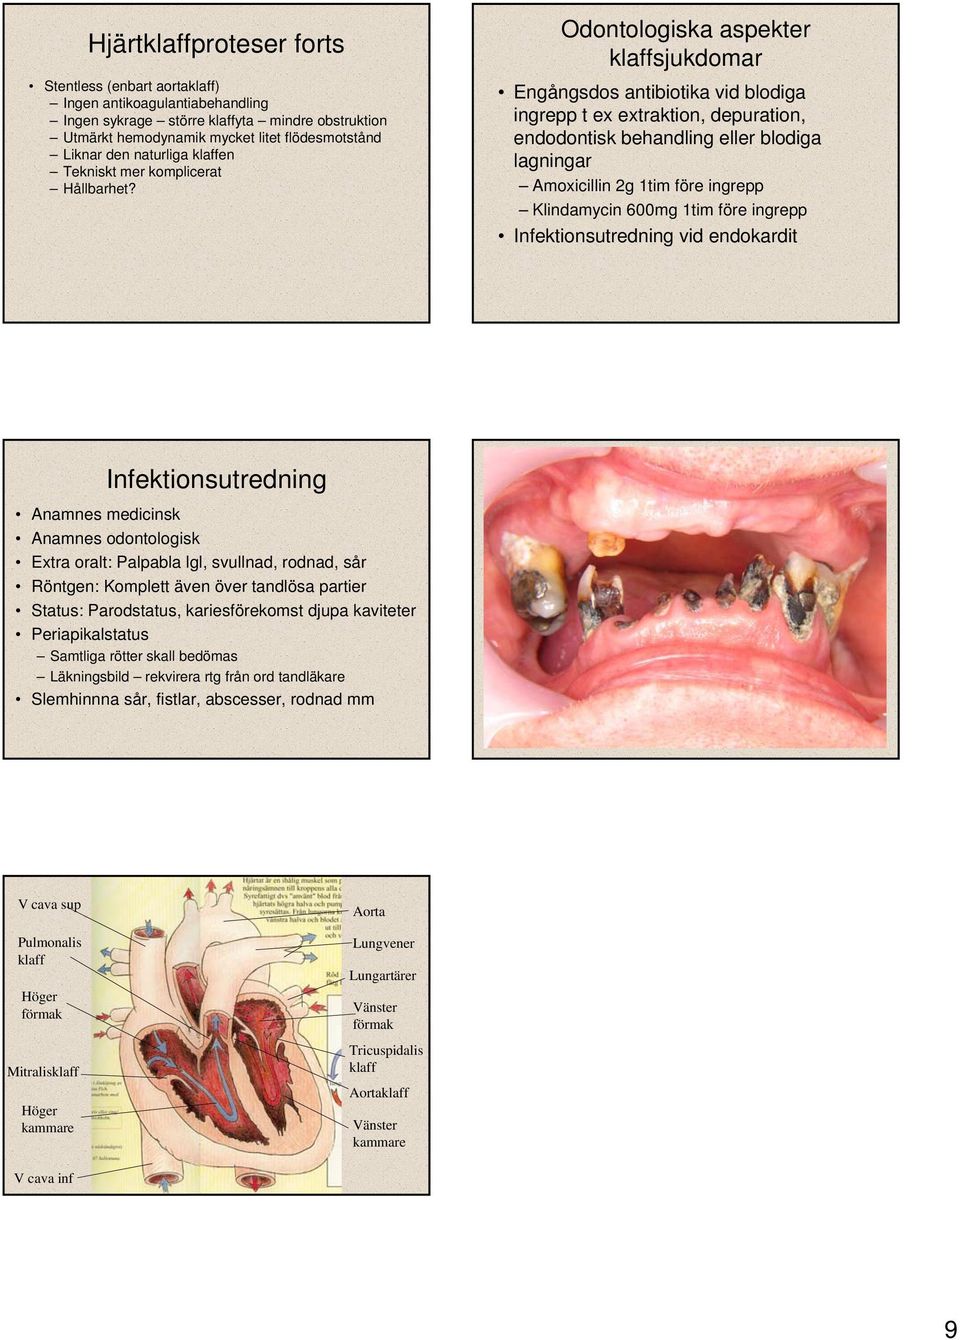 Odontologiska aspekter klaffsjukdomar Engångsdos antibiotika vid blodiga ingrepp t ex extraktion, depuration, endodontisk behandling eller blodiga lagningar Amoxicillin 2g 1tim före ingrepp